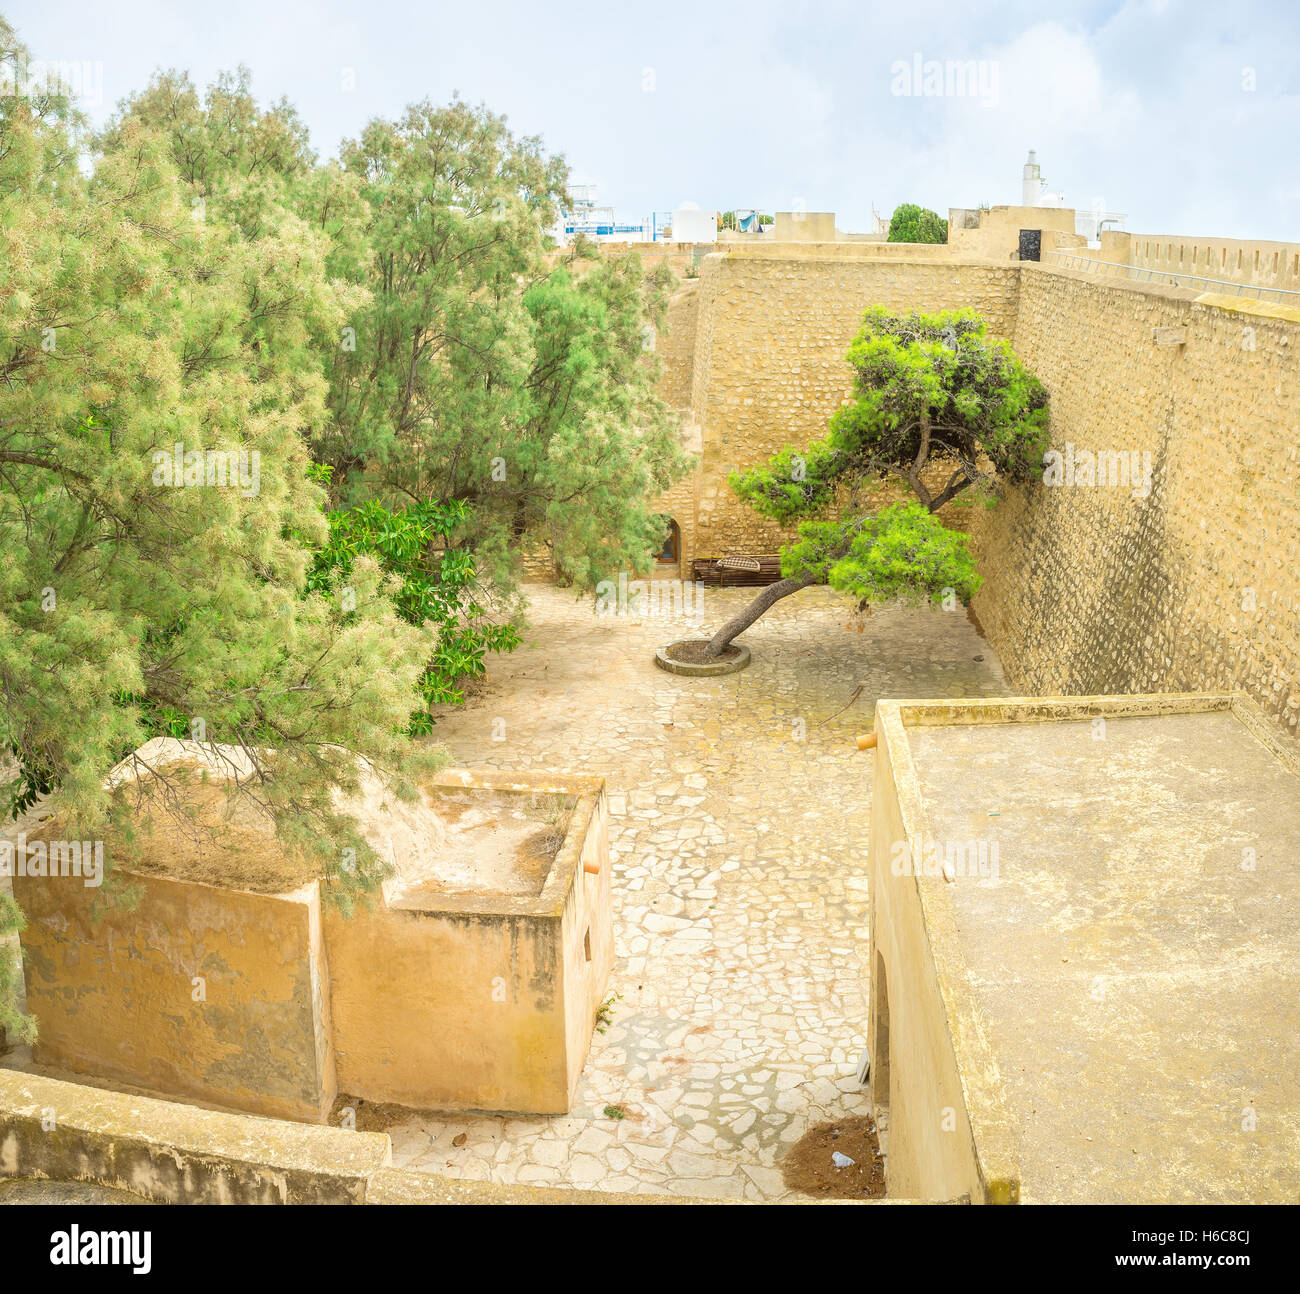 La cittadella di alte pareti nascondere il lussureggiante giardino nel cortile, Hammamet, Tunisia. Foto Stock